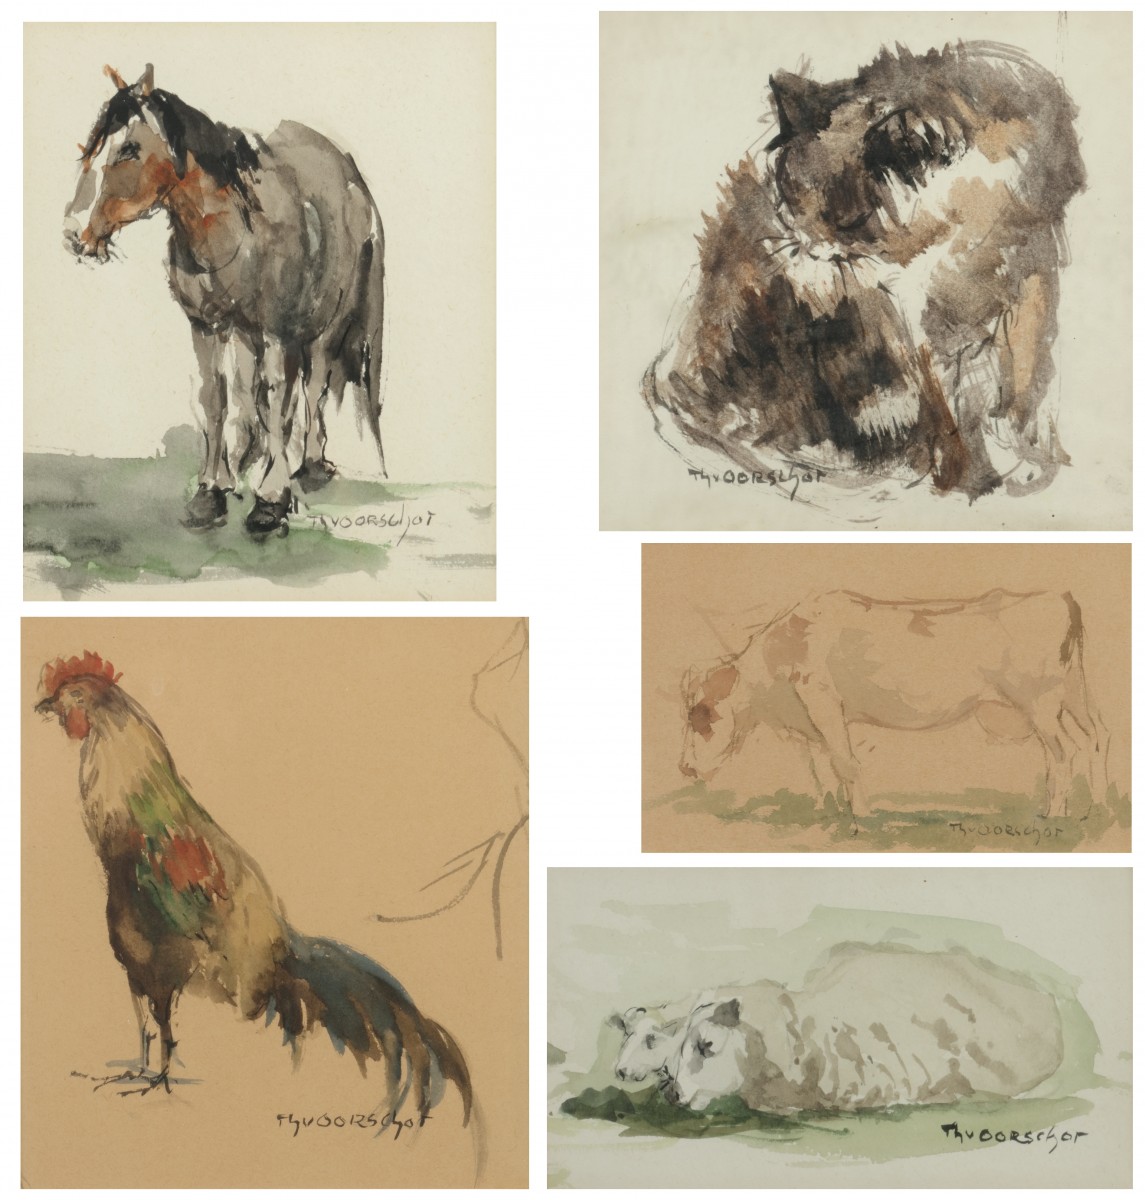 Theodorus (Dorus) van Oorschot (Schijndel, 1910 - 1989), Een convoluut van vijf schetsboekbladen met voorstellingen van dieren.